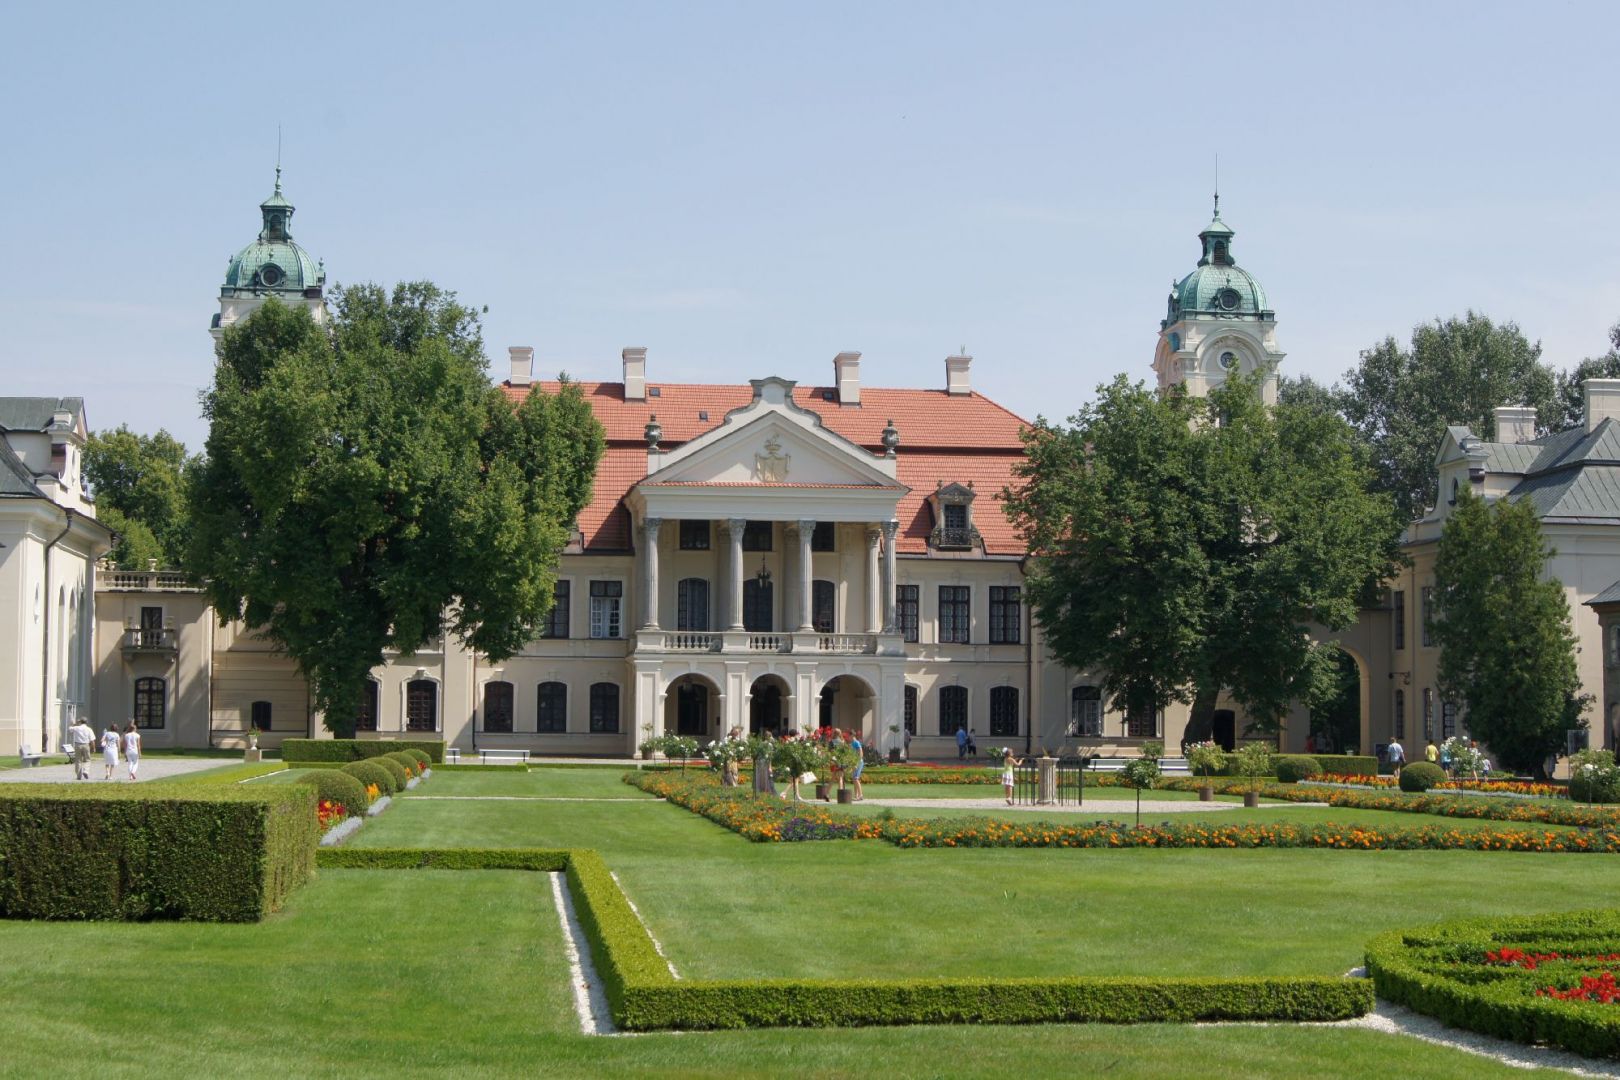 The Zamoyski Museum and palace and park complex in Kozłówka